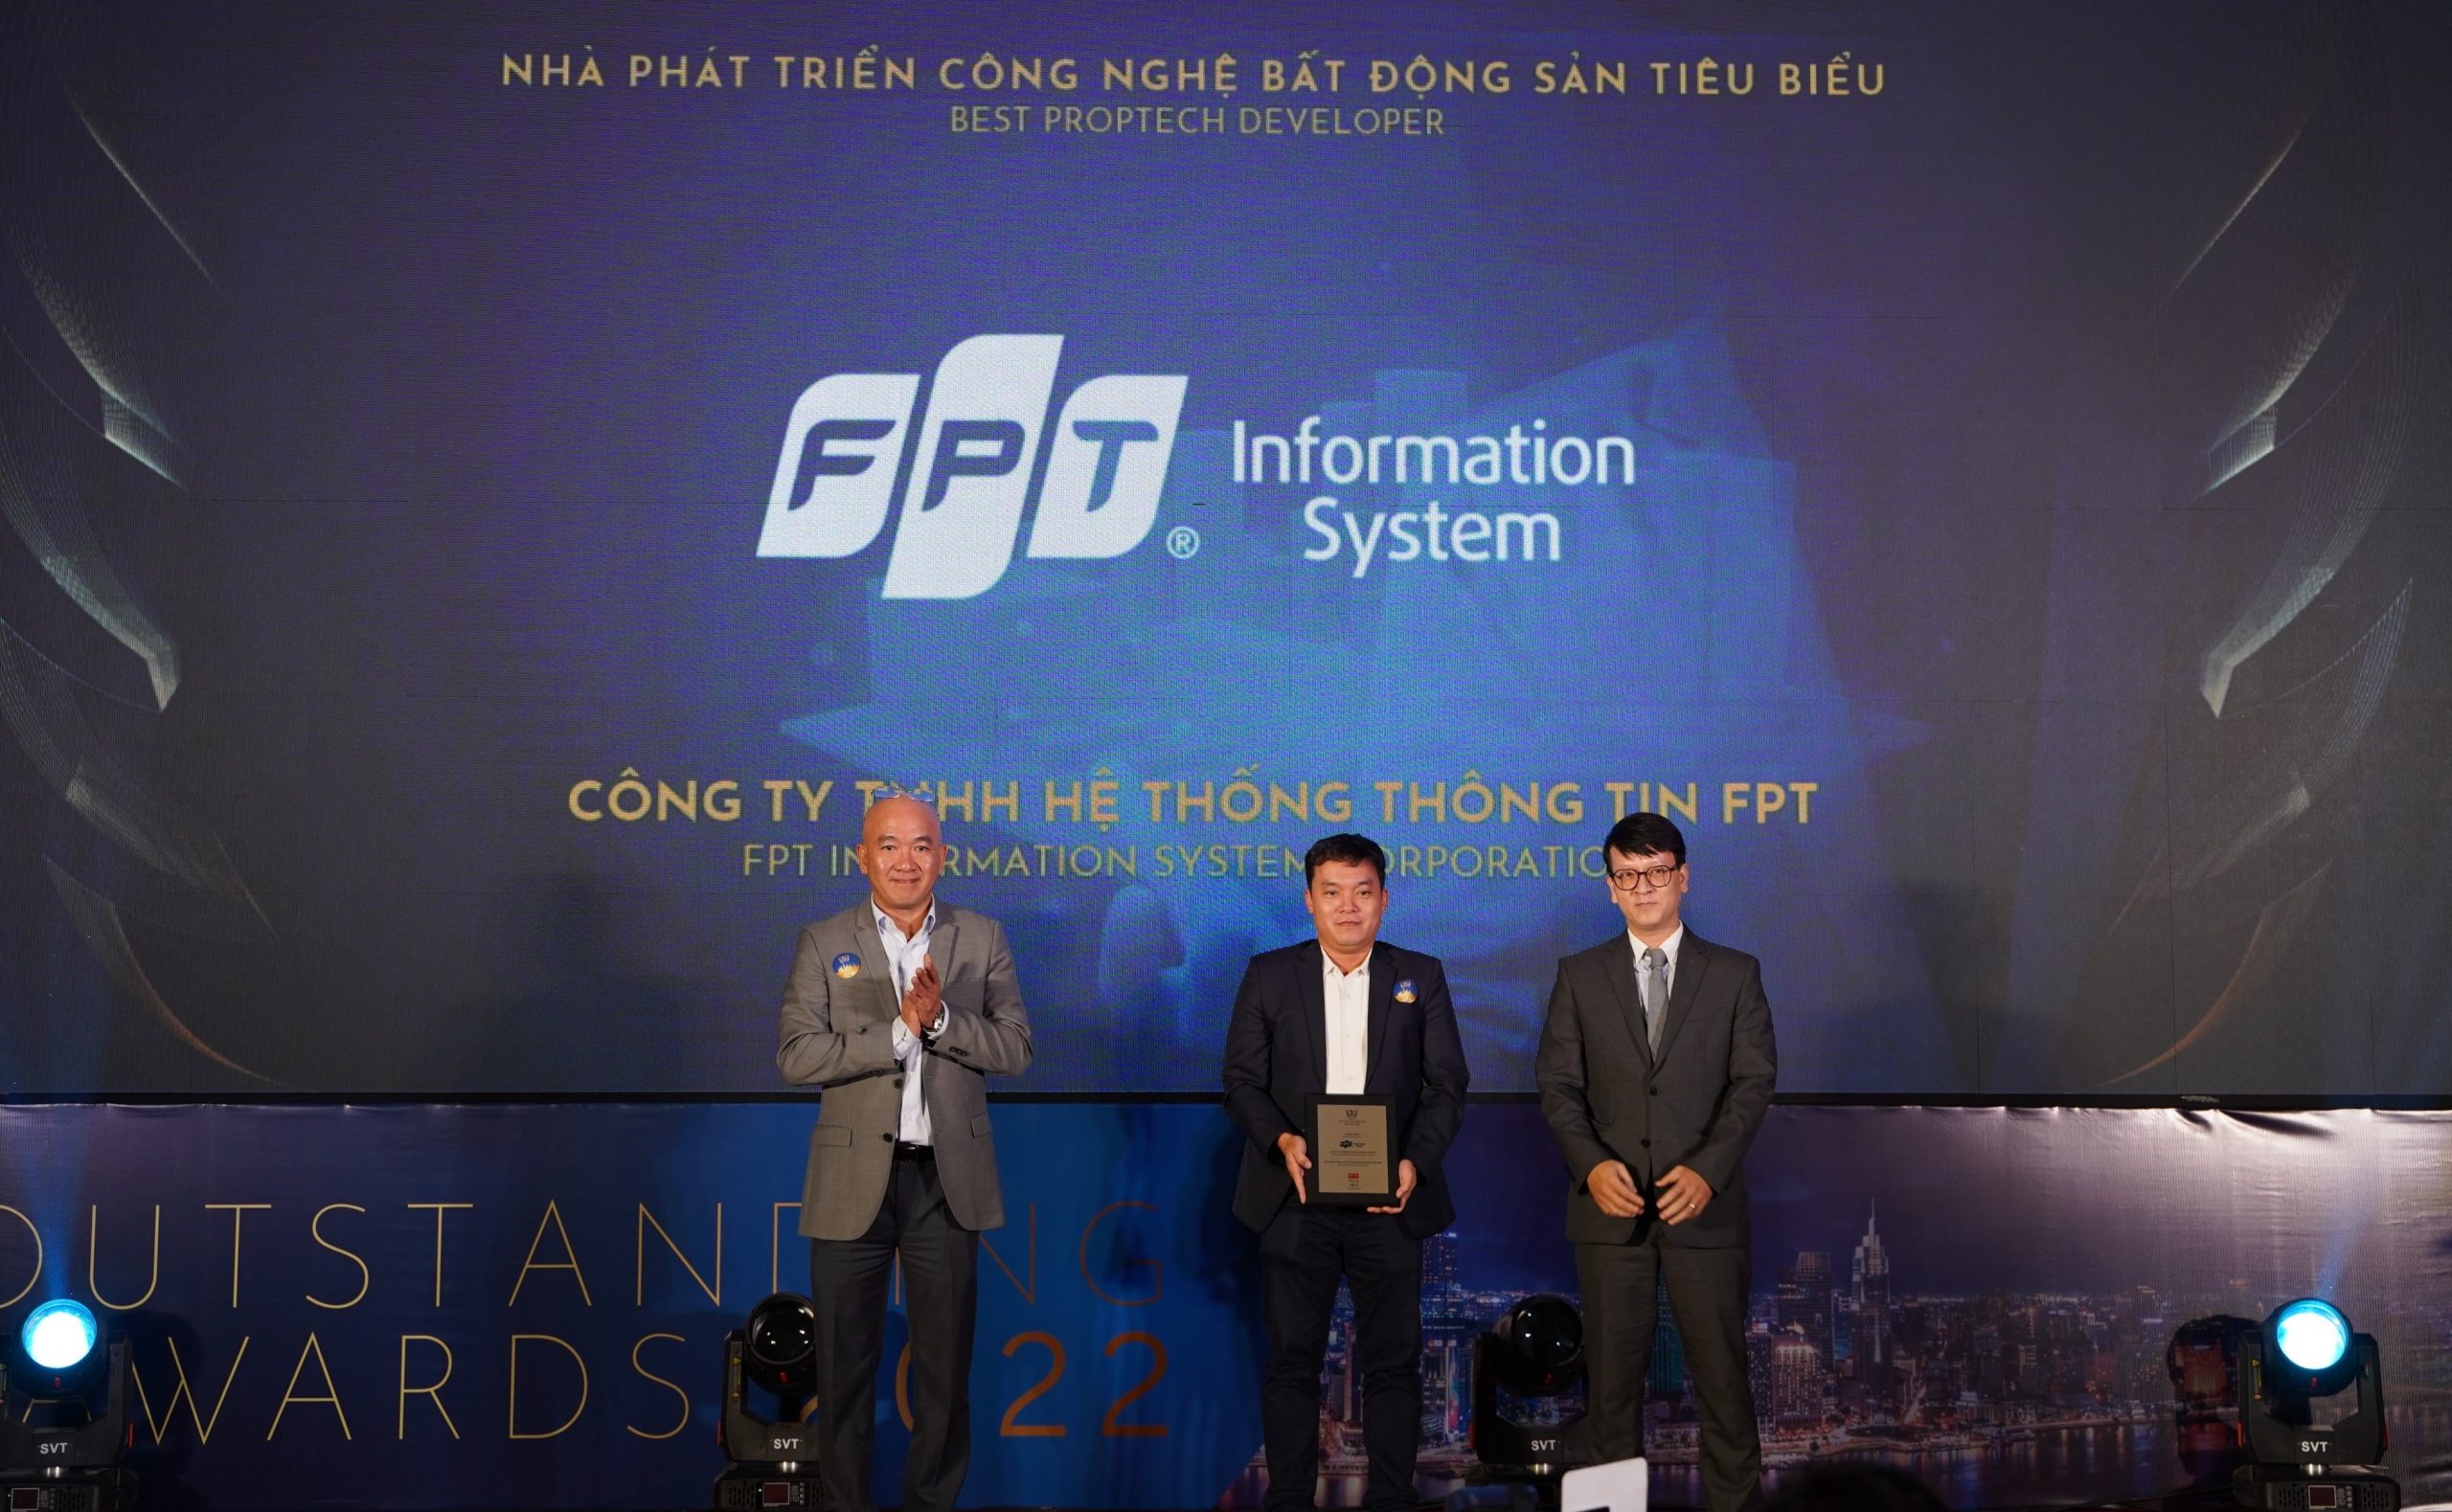 Giải thưởng Bất động sản tiêu biểu Việt Nam 2022, hạng mục Nhà phát triển công nghệ bất động sản tiêu biểu